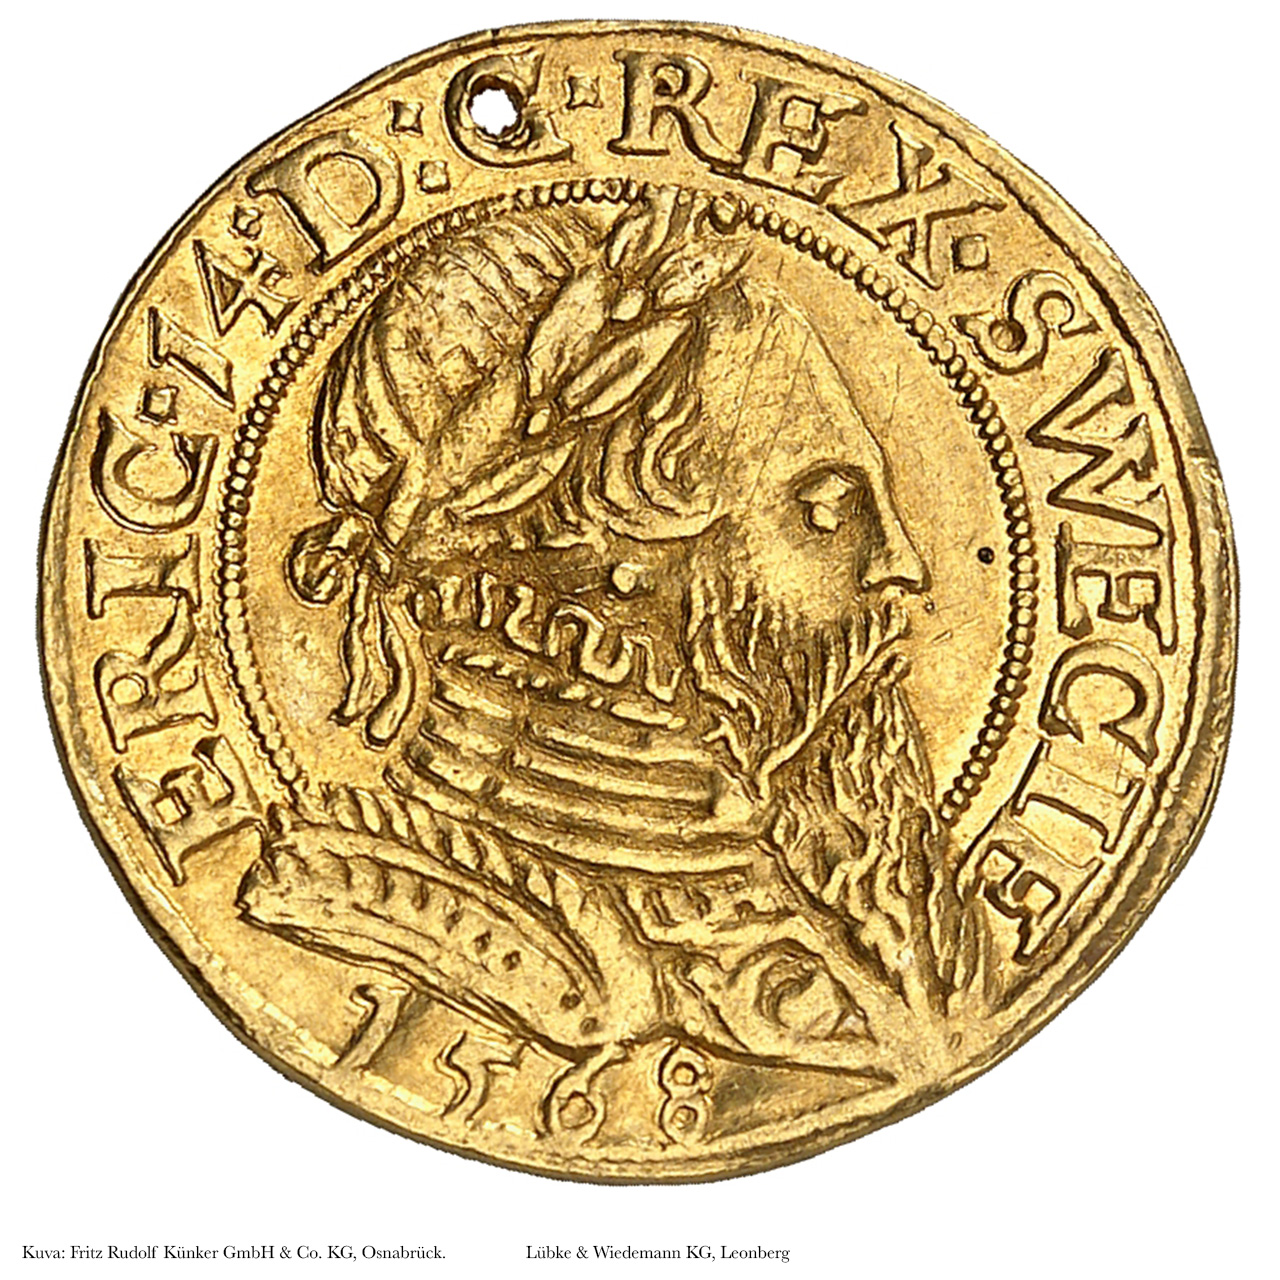 Ruotsin Eerik XIV:n aikaisesta kultarahasta huudettiin 200 000 euron ennätyshinta